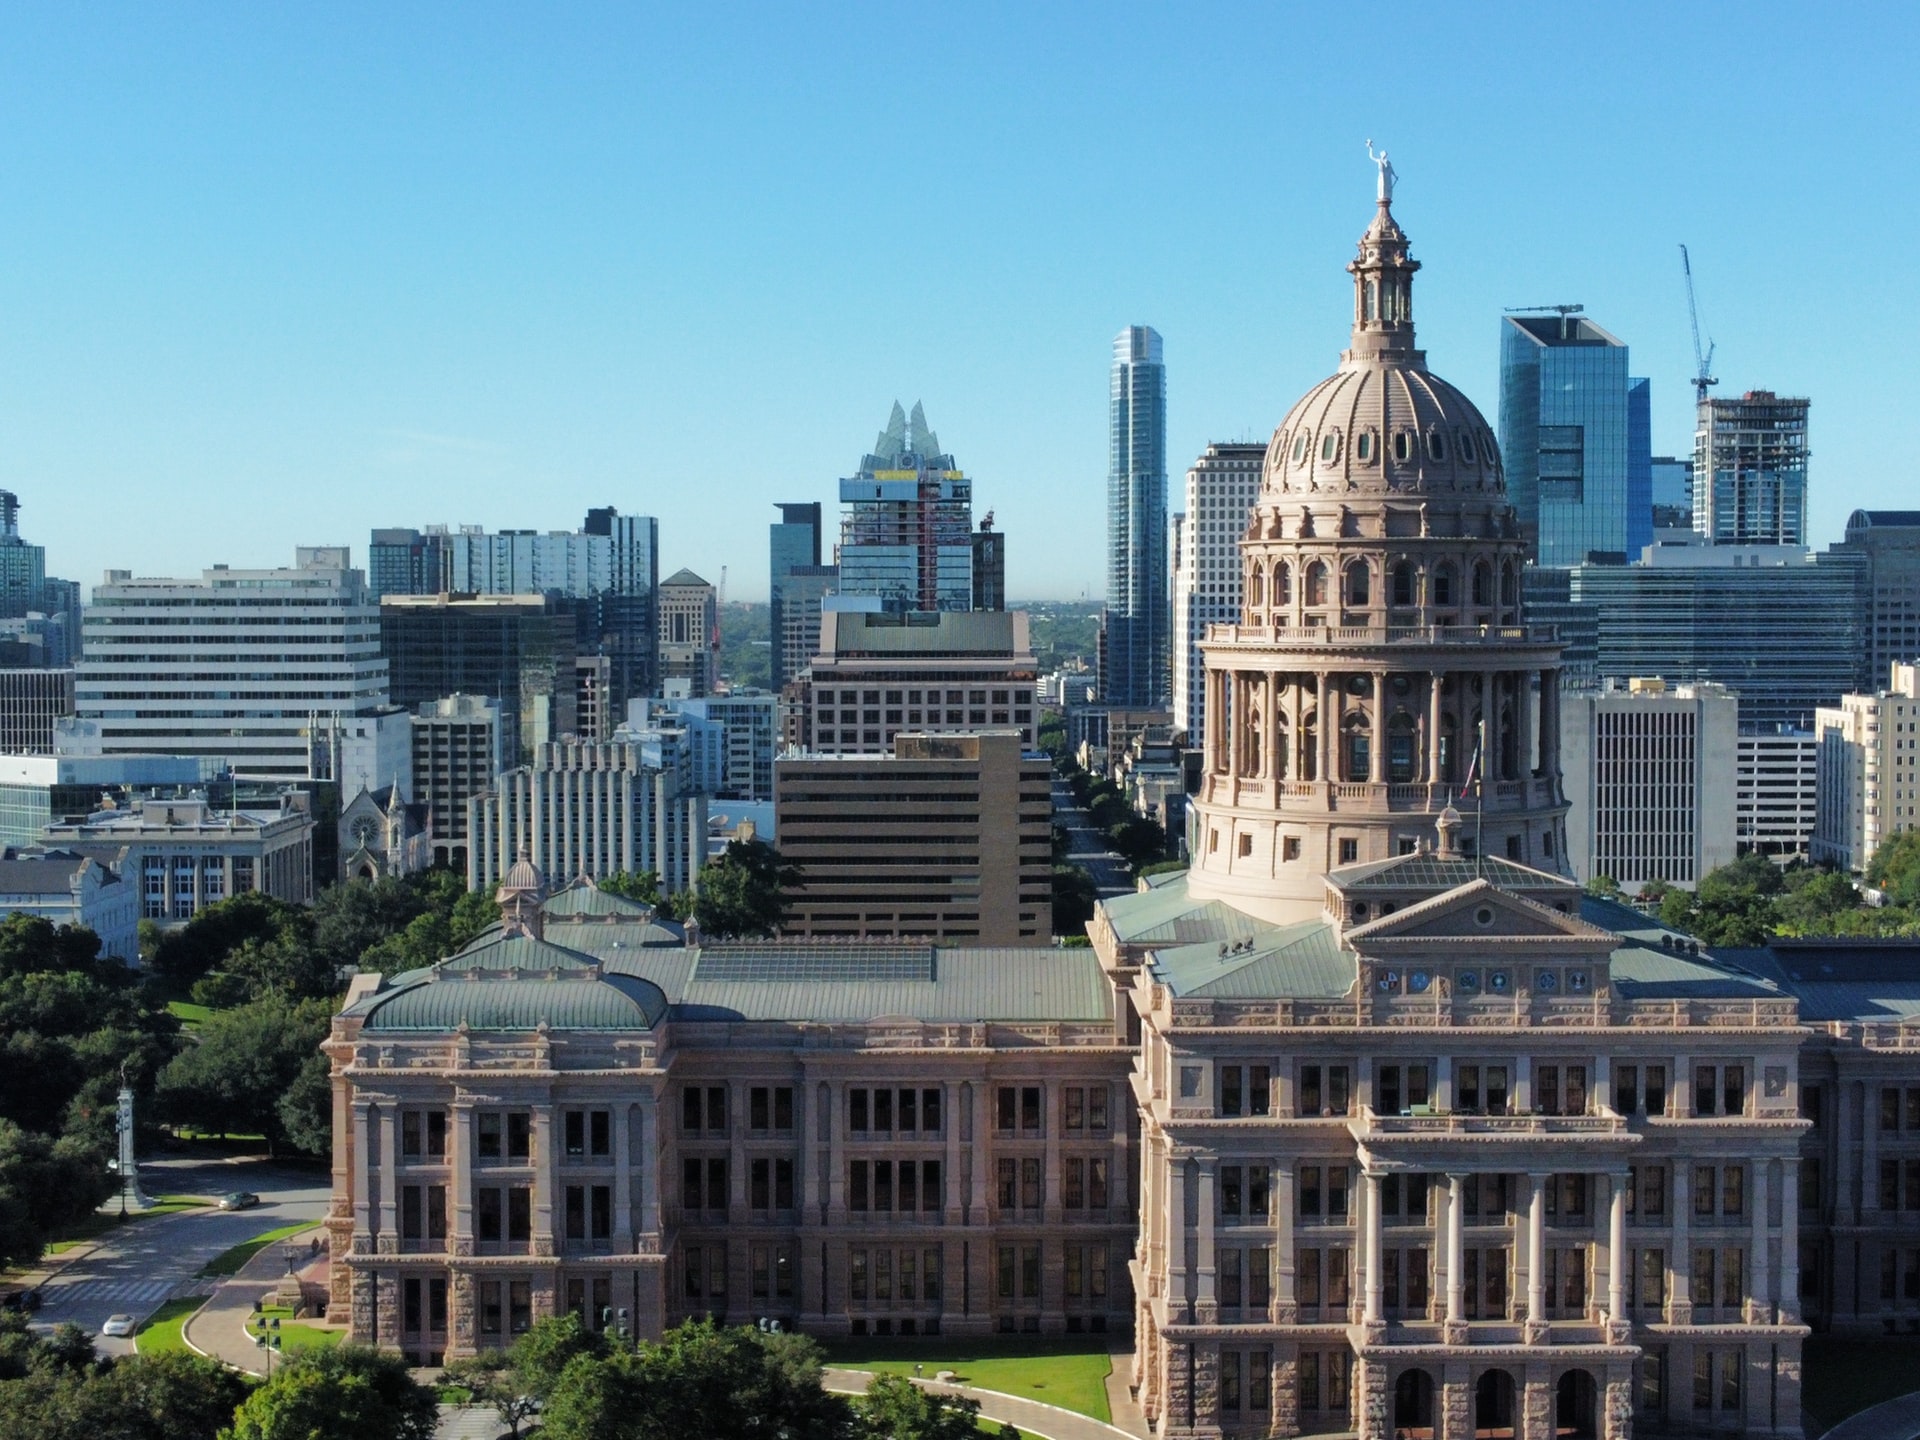 Sede del Capitolio del Estado de Texas, el distrito de los museos y la animada Congress Avenue, el centro de Austin es el lugar ideal para estar cerca de todo.